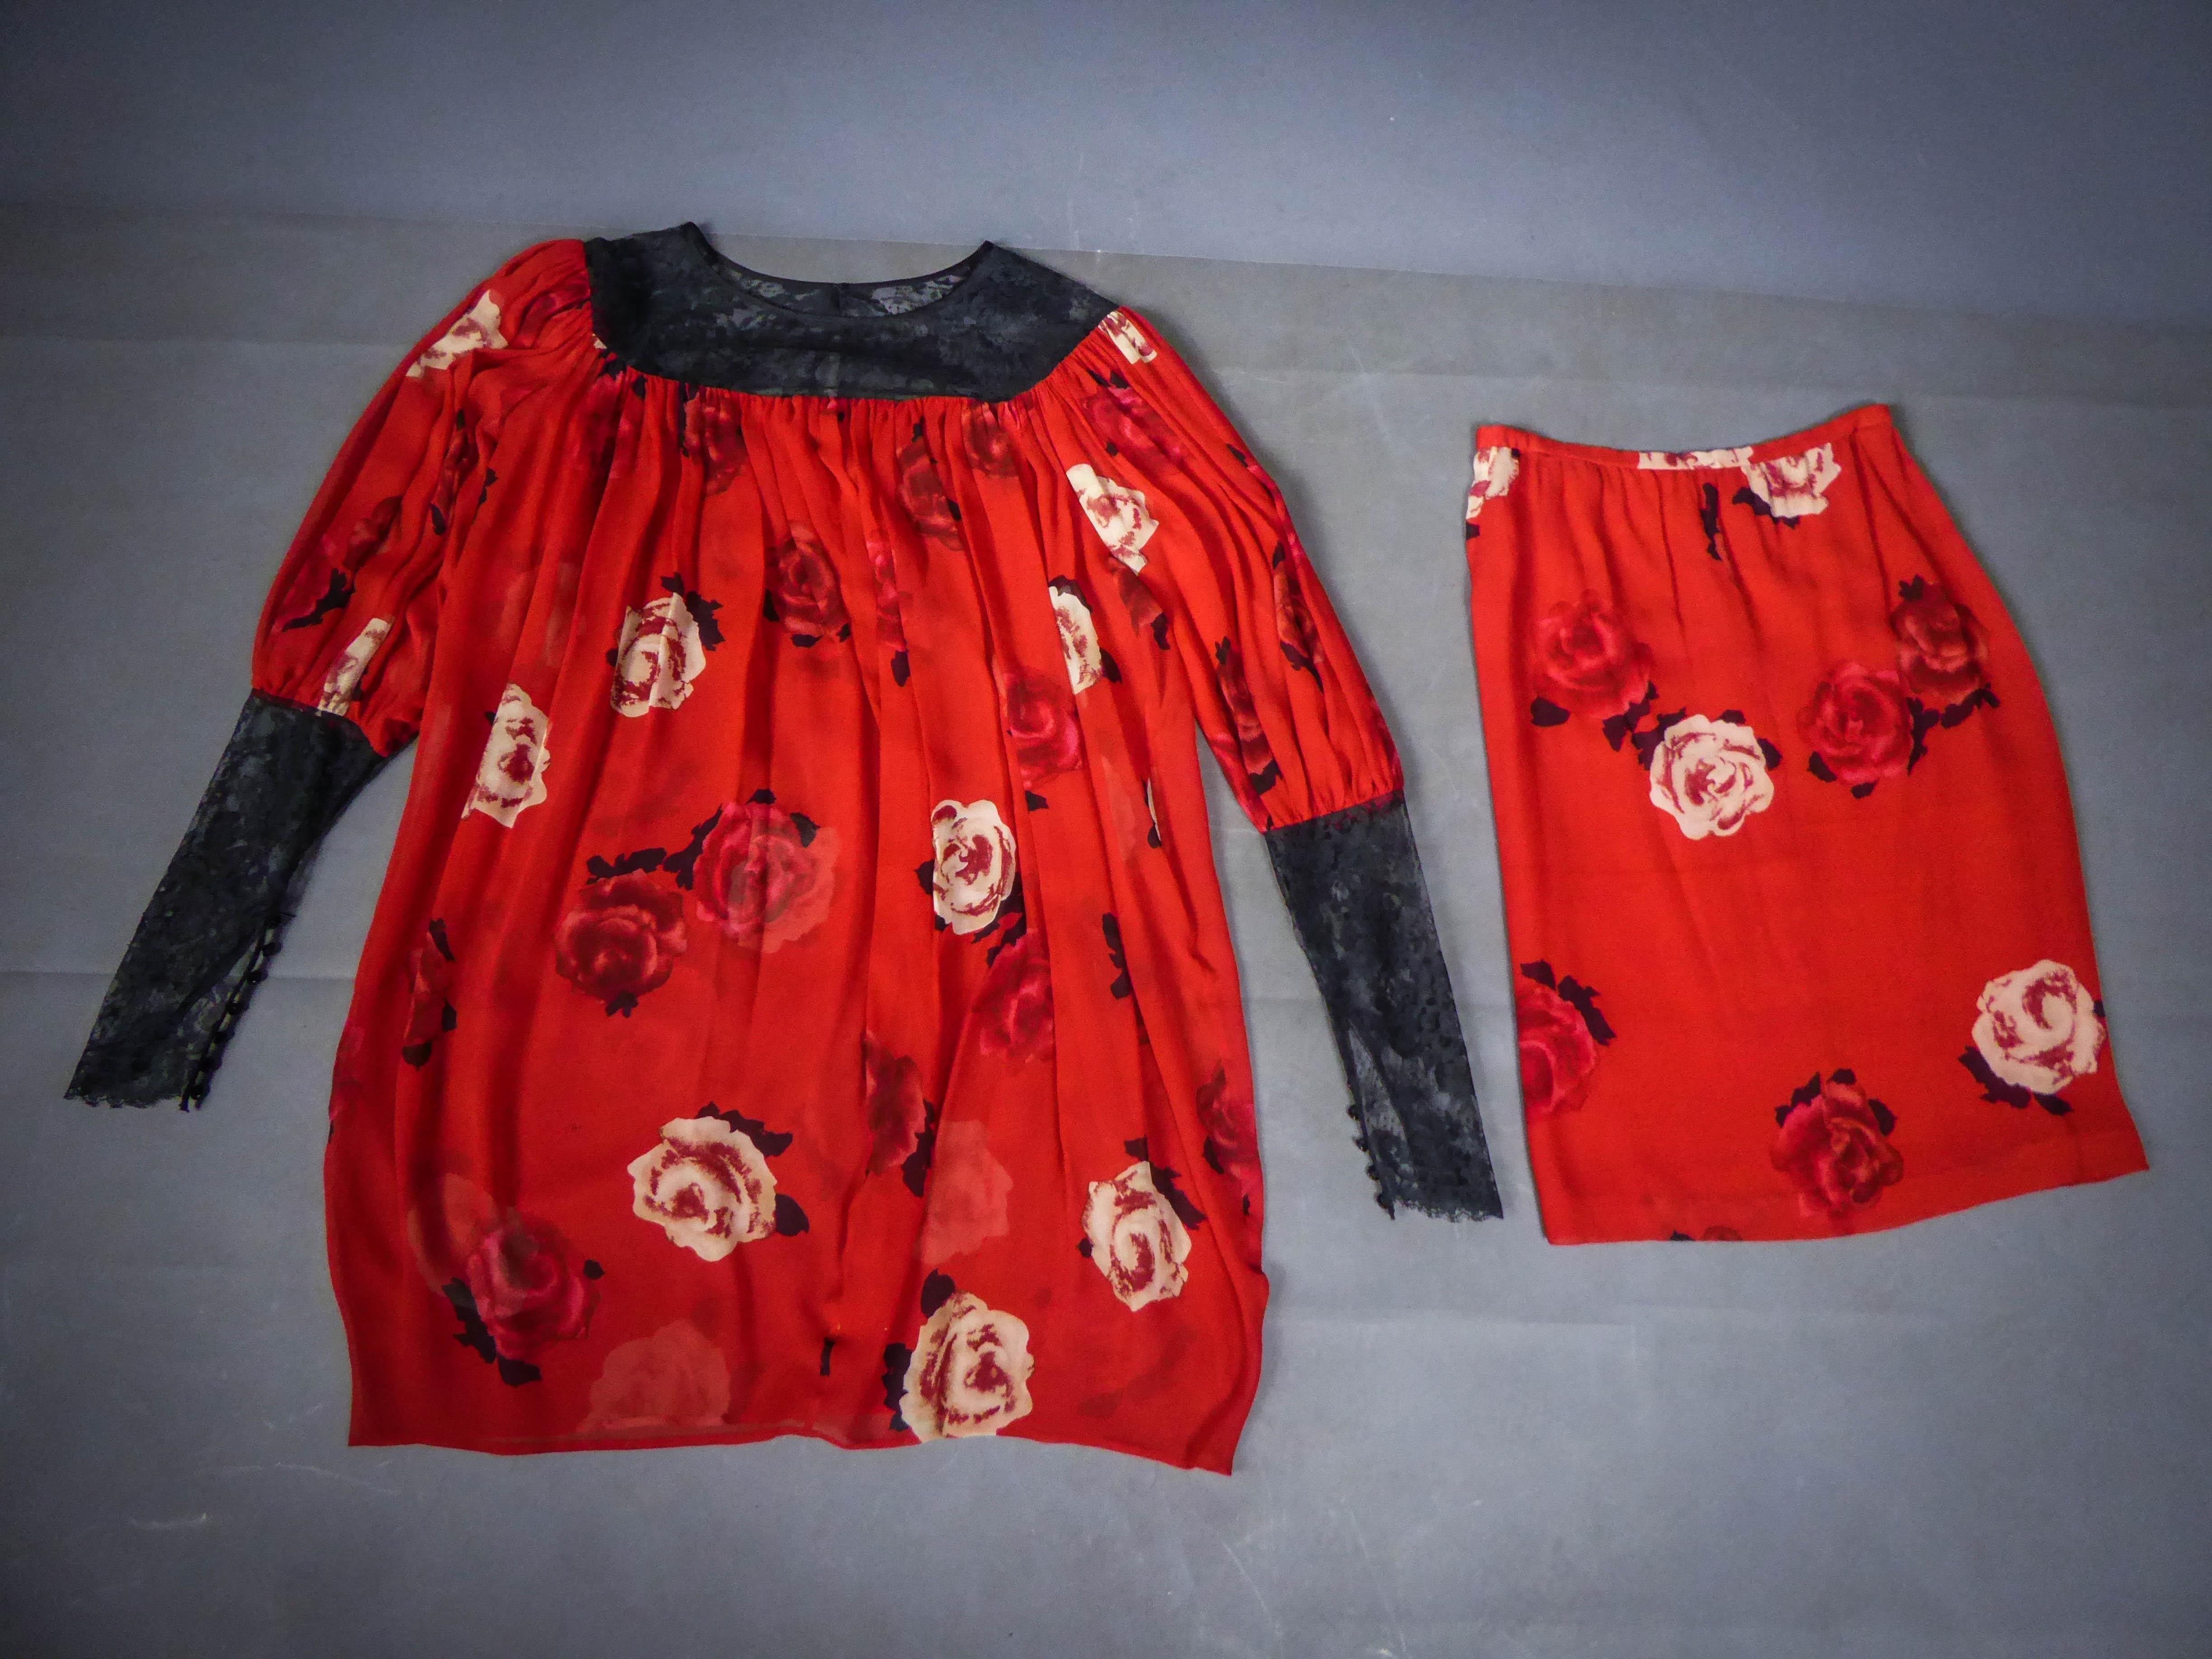 Ca. 1989
Frankreich

Yves Saint Laurent Haute Couture Rock- und Blusenset aus rotem Seidenkrepp mit schwarzem und weißem Rosendruck aus den späten 1980er Jahren. Kein Label eingestellt. Seidenkrepp des Abraham-Hauses. Locker geschnittene Bluse mit